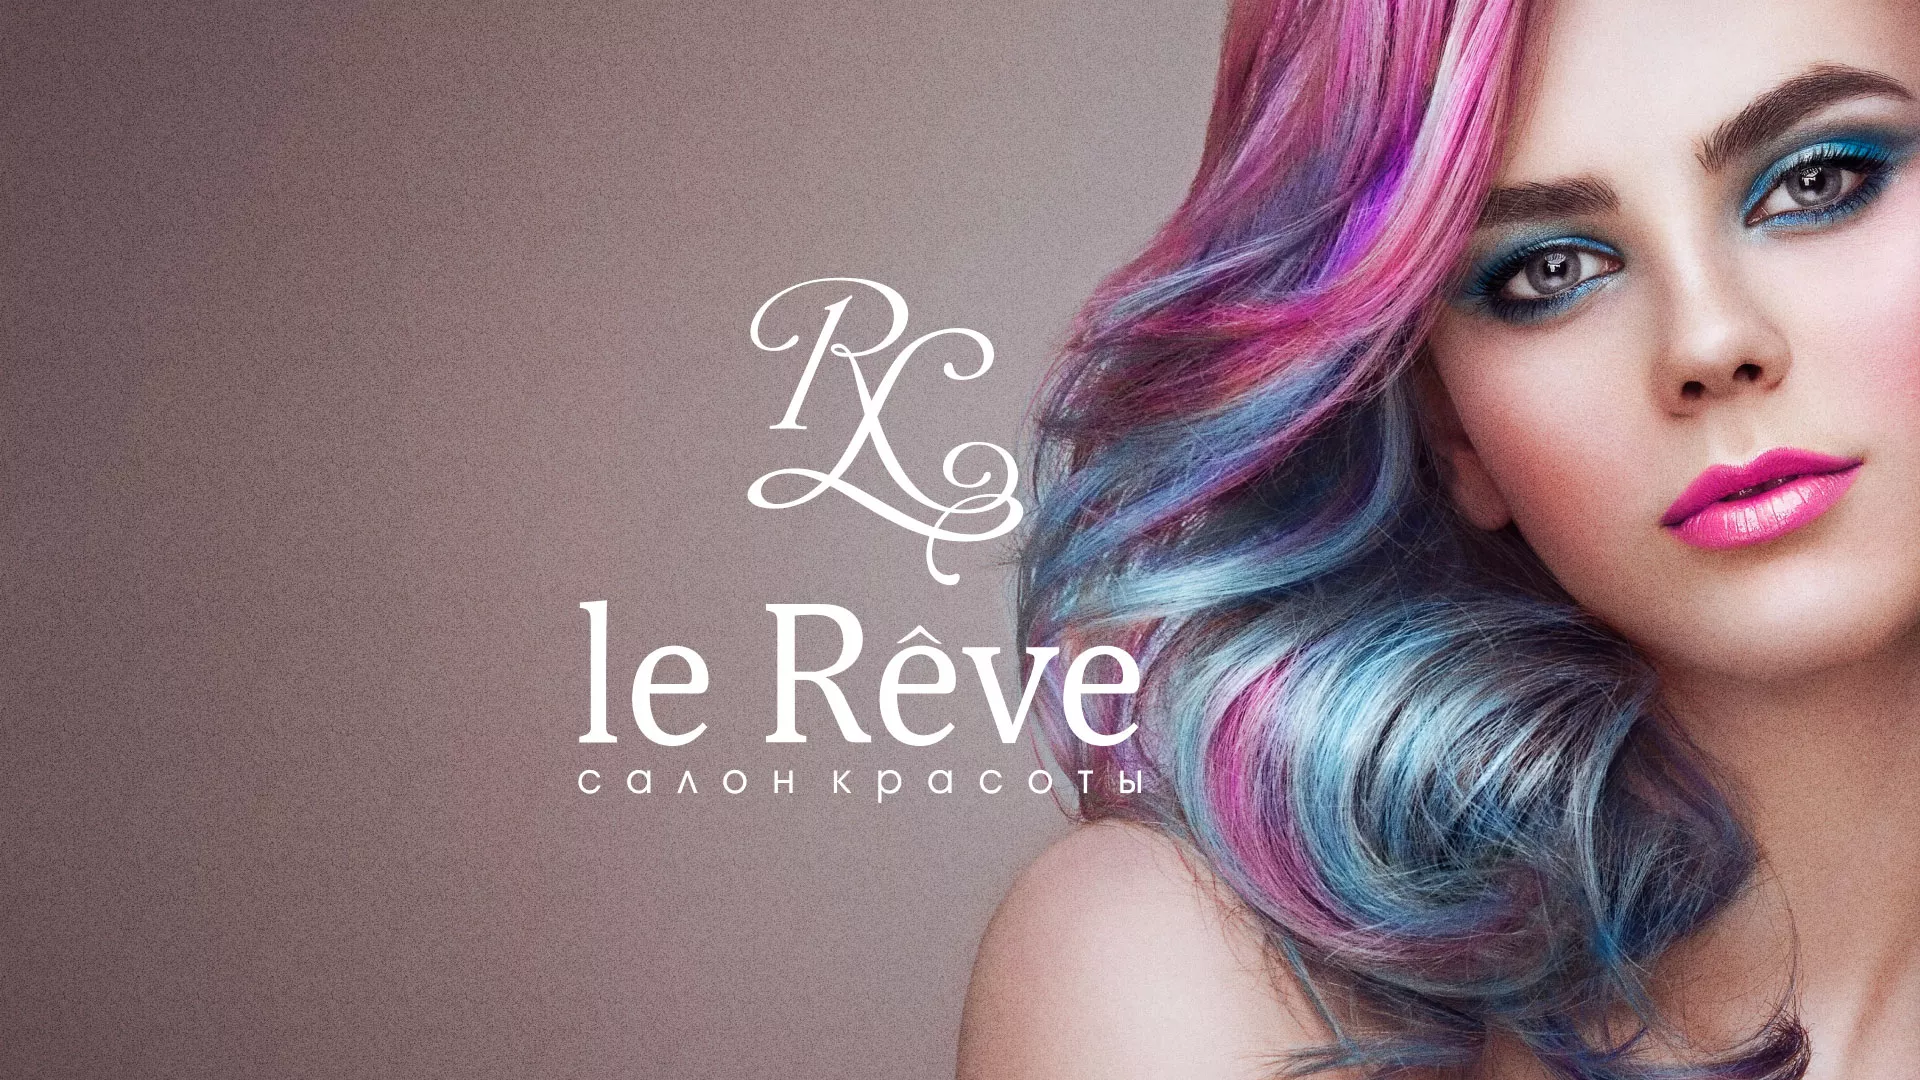 Создание сайта для салона красоты «Le Reve» в Устюжне